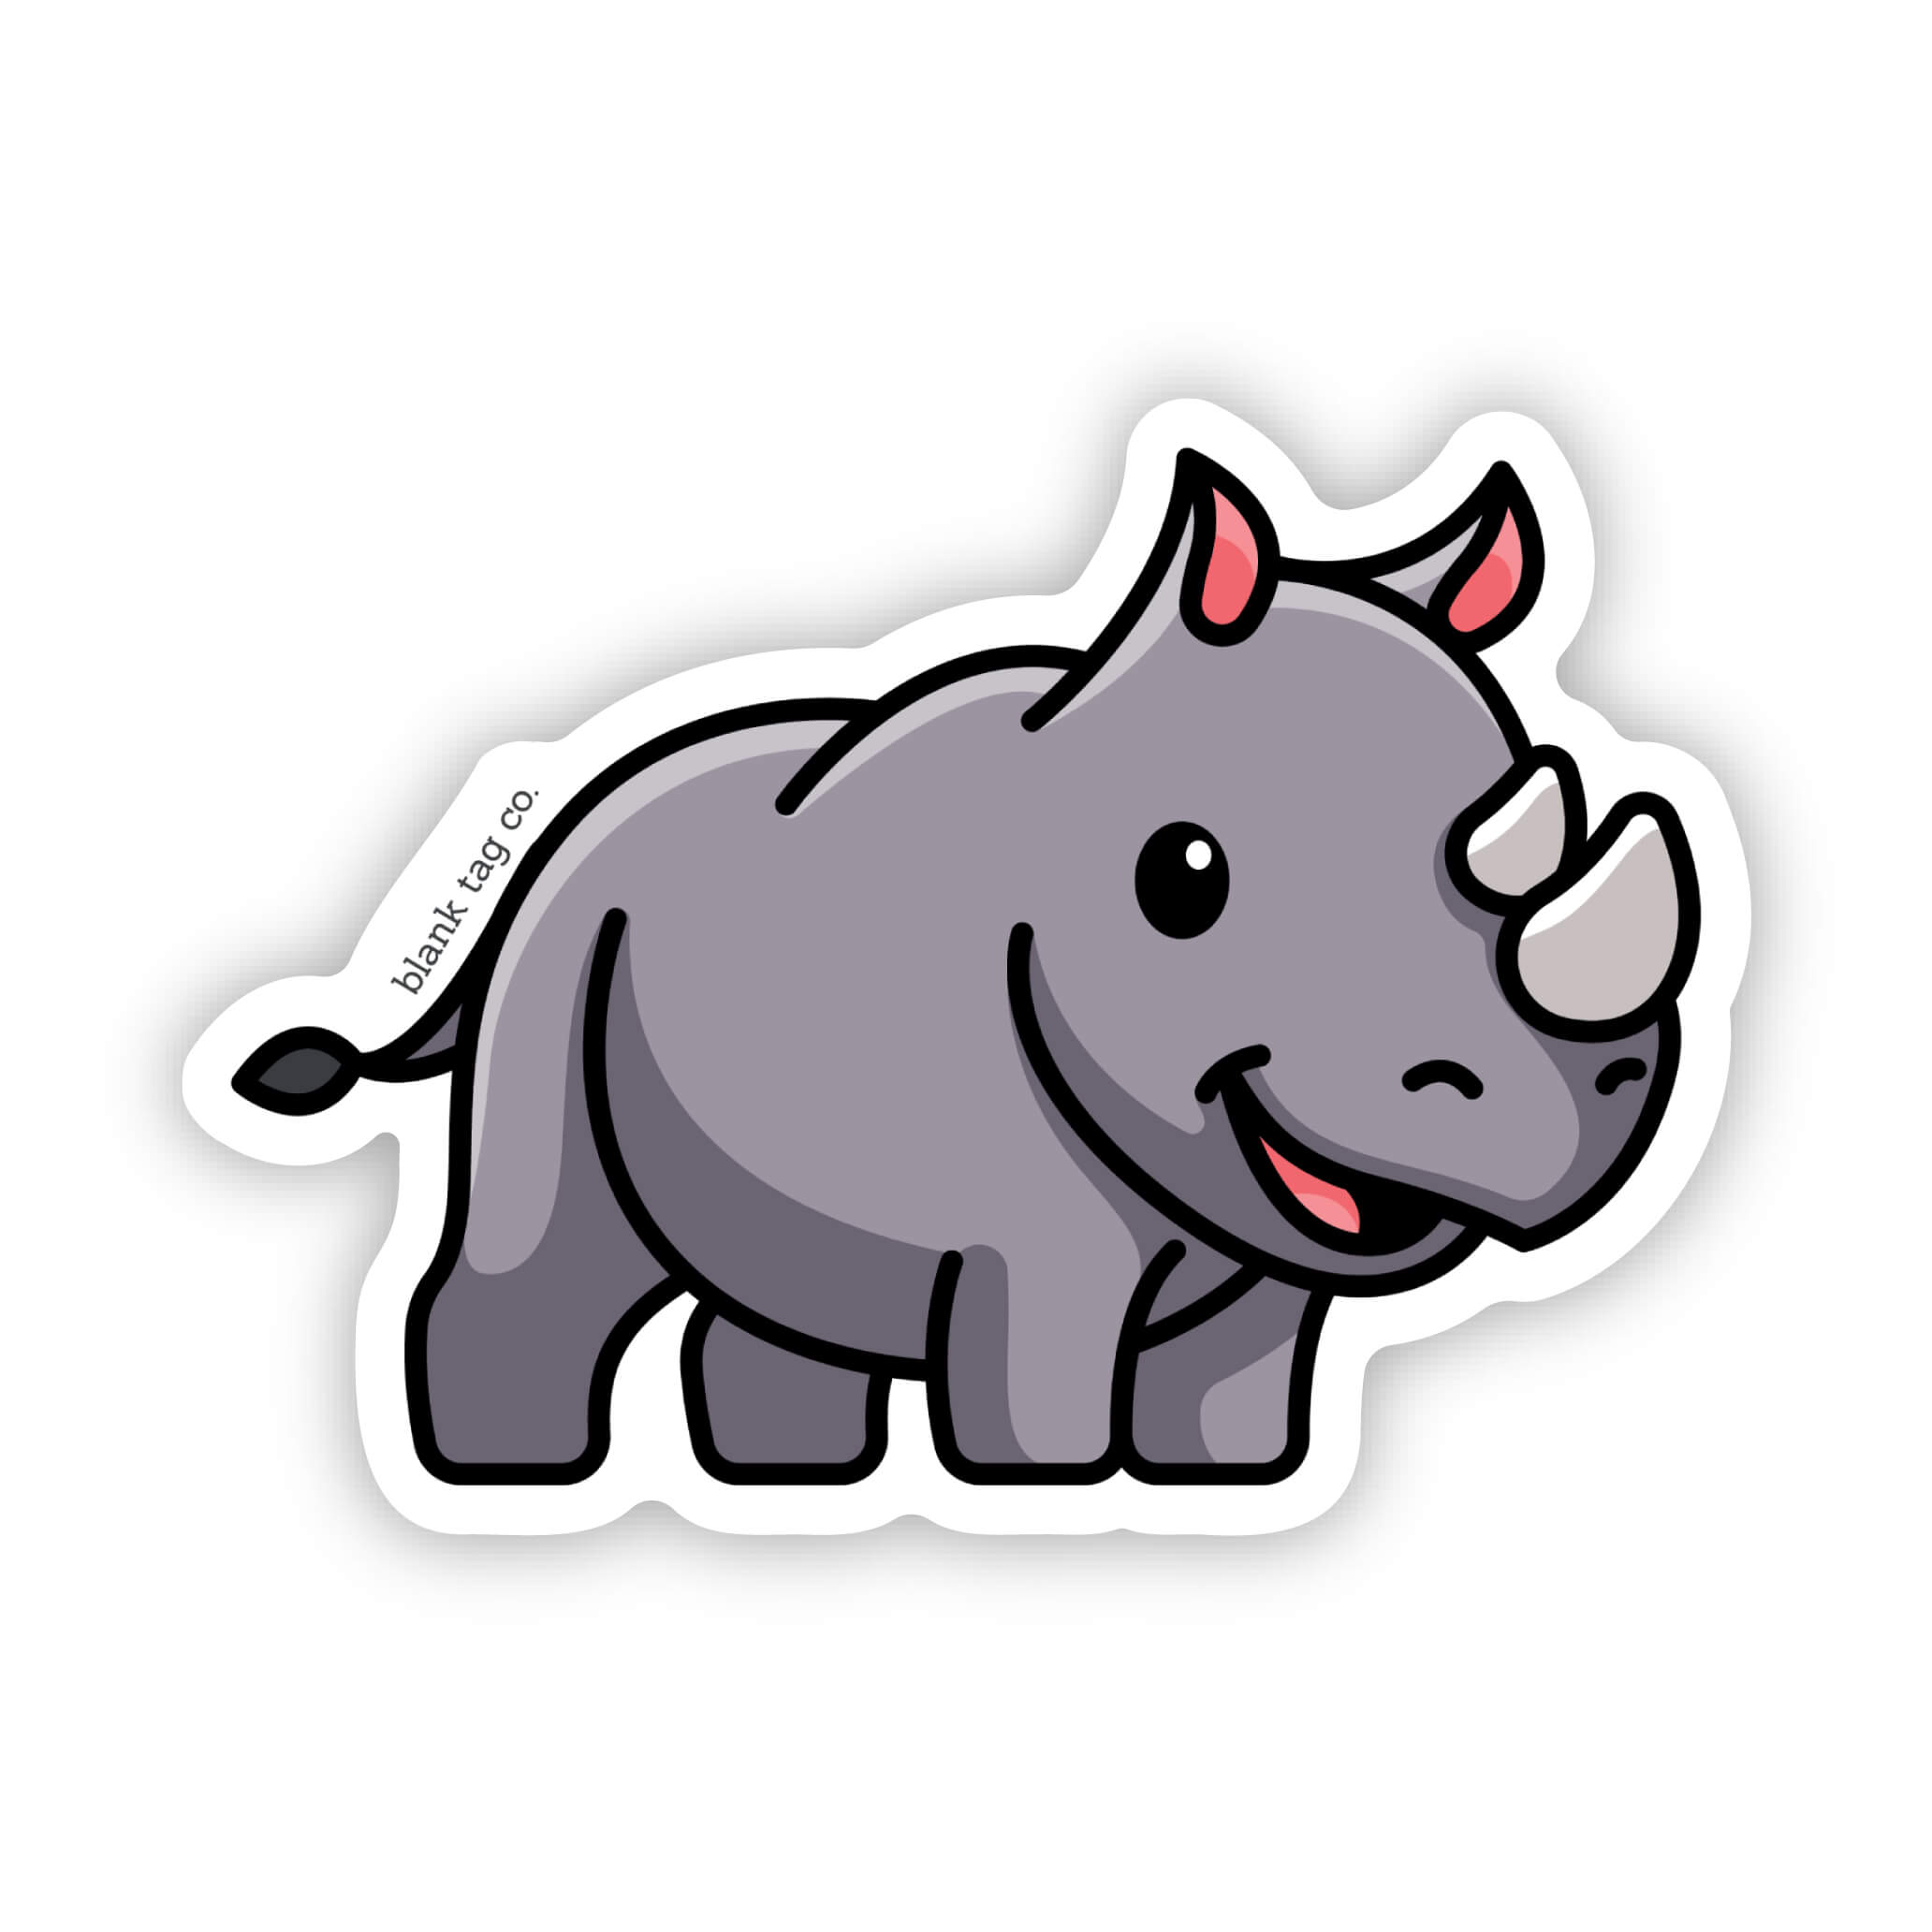 The Rhino Sticker